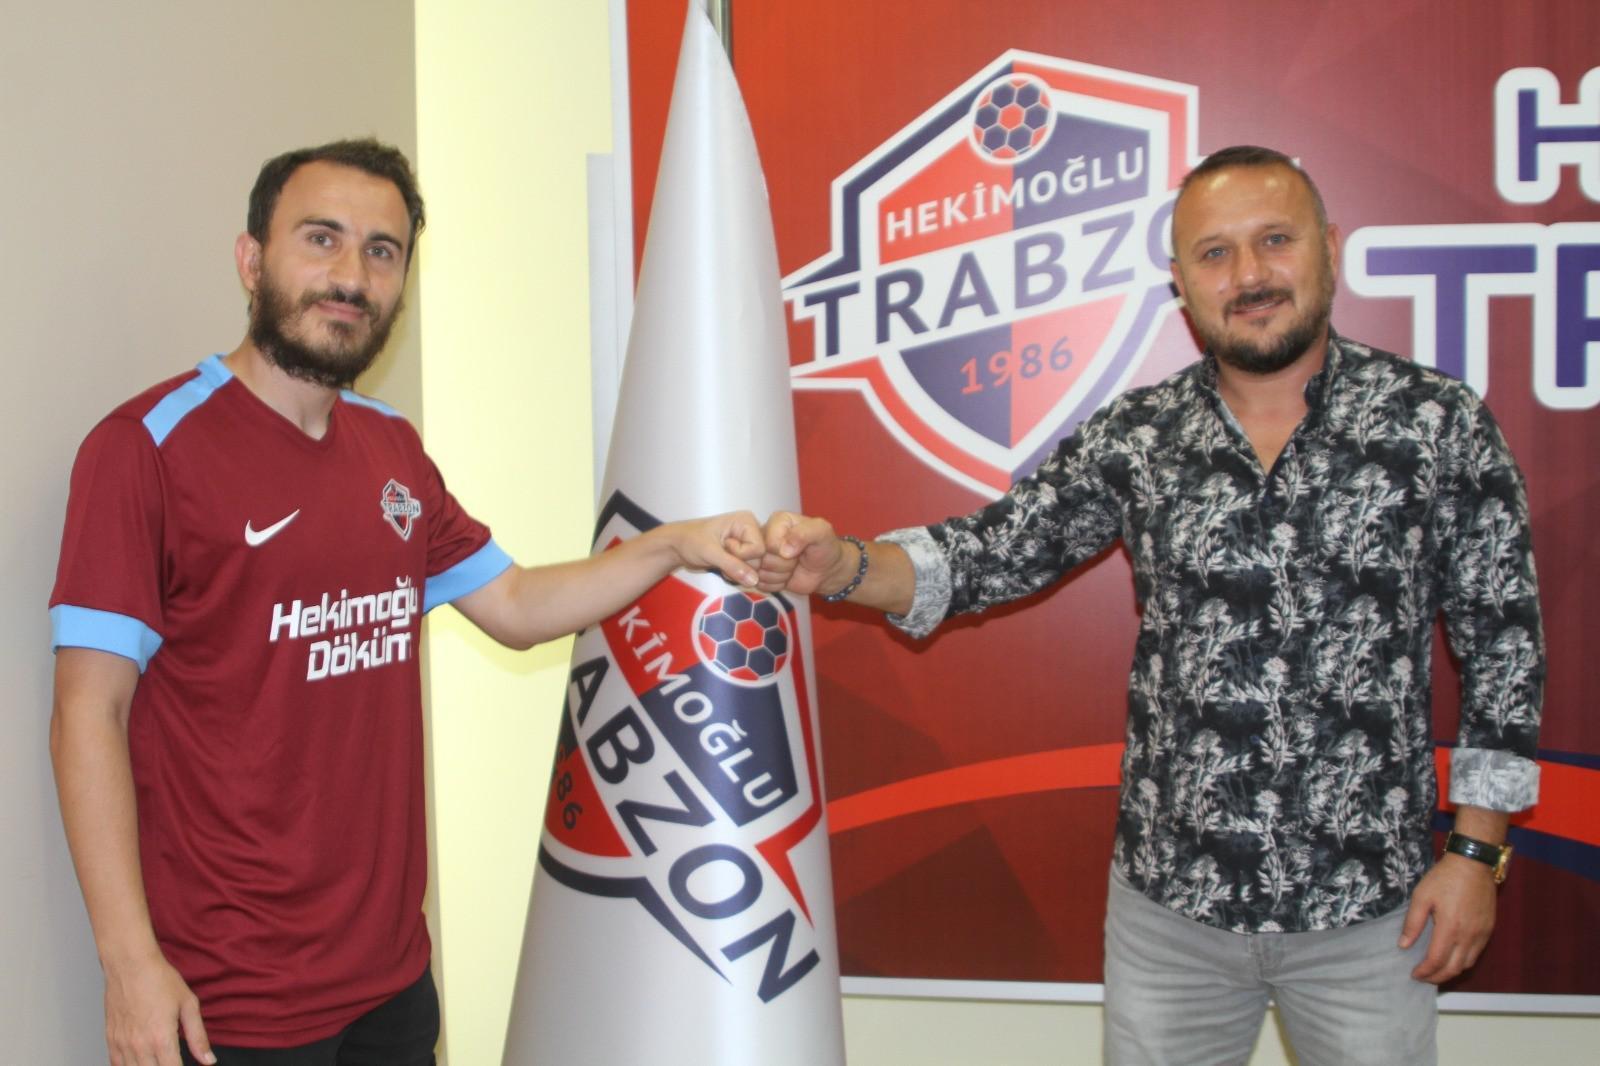 Hekimoğlu Trabzon FKda iki imza